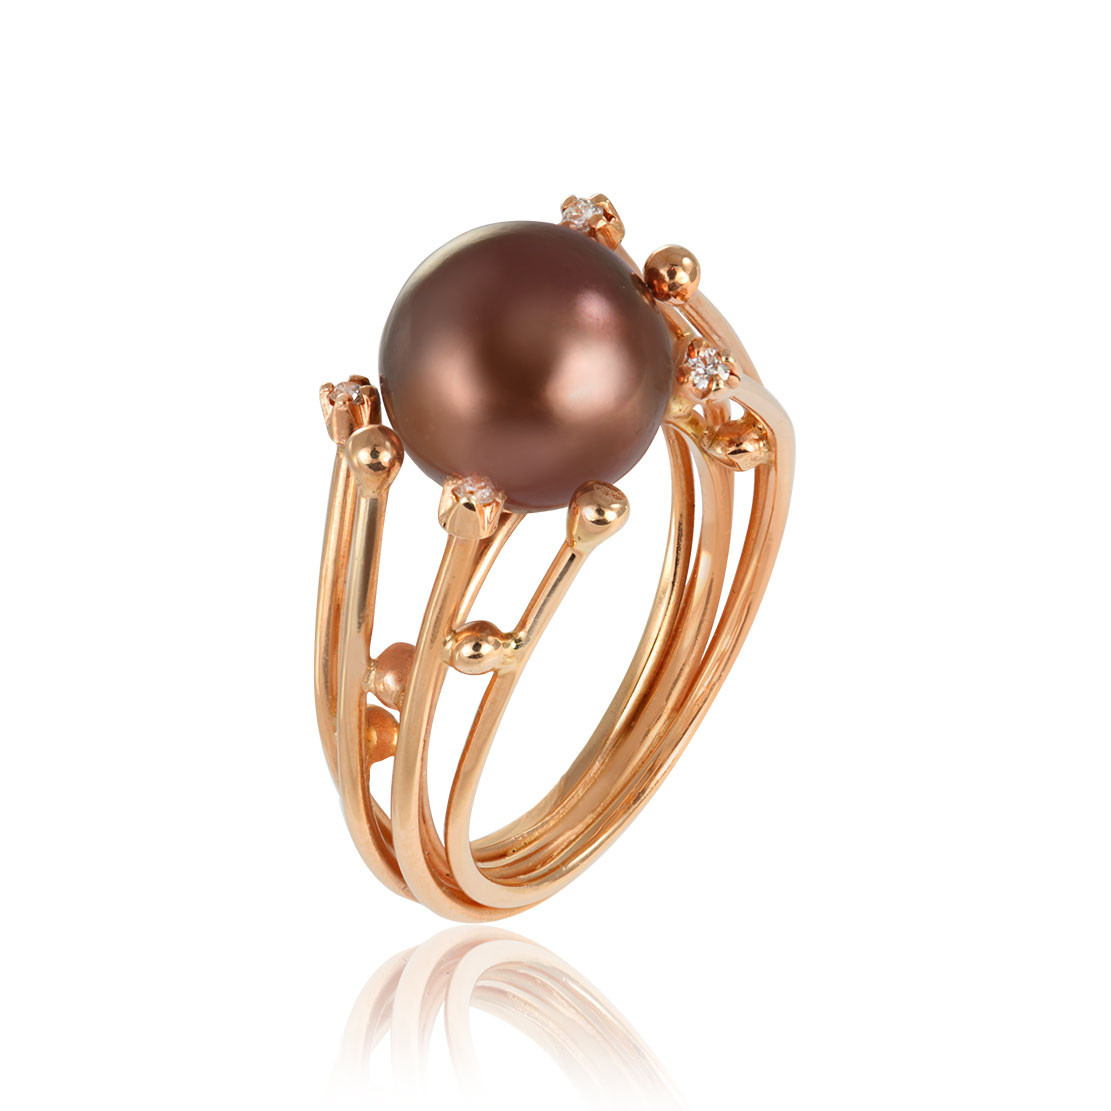 Prsteň La Luna, ružové zlato, diamant, tahitská perla s farebnou úpravou.